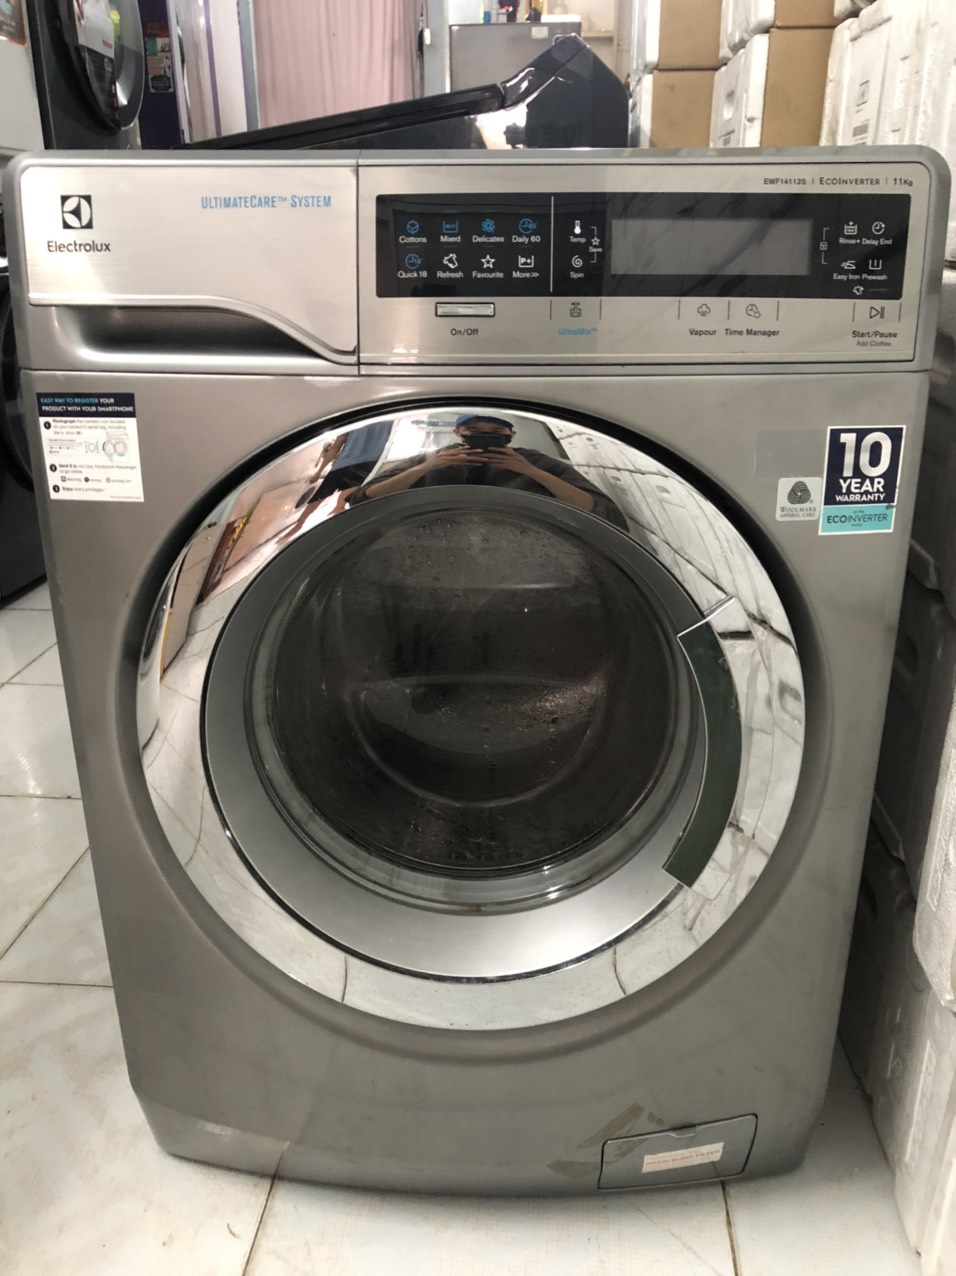 Hãy cùng tìm hiểu về dịch vụ sửa máy giặt của Sửa máy giặt quận Tân Bình hcm chúng tôi nhé.